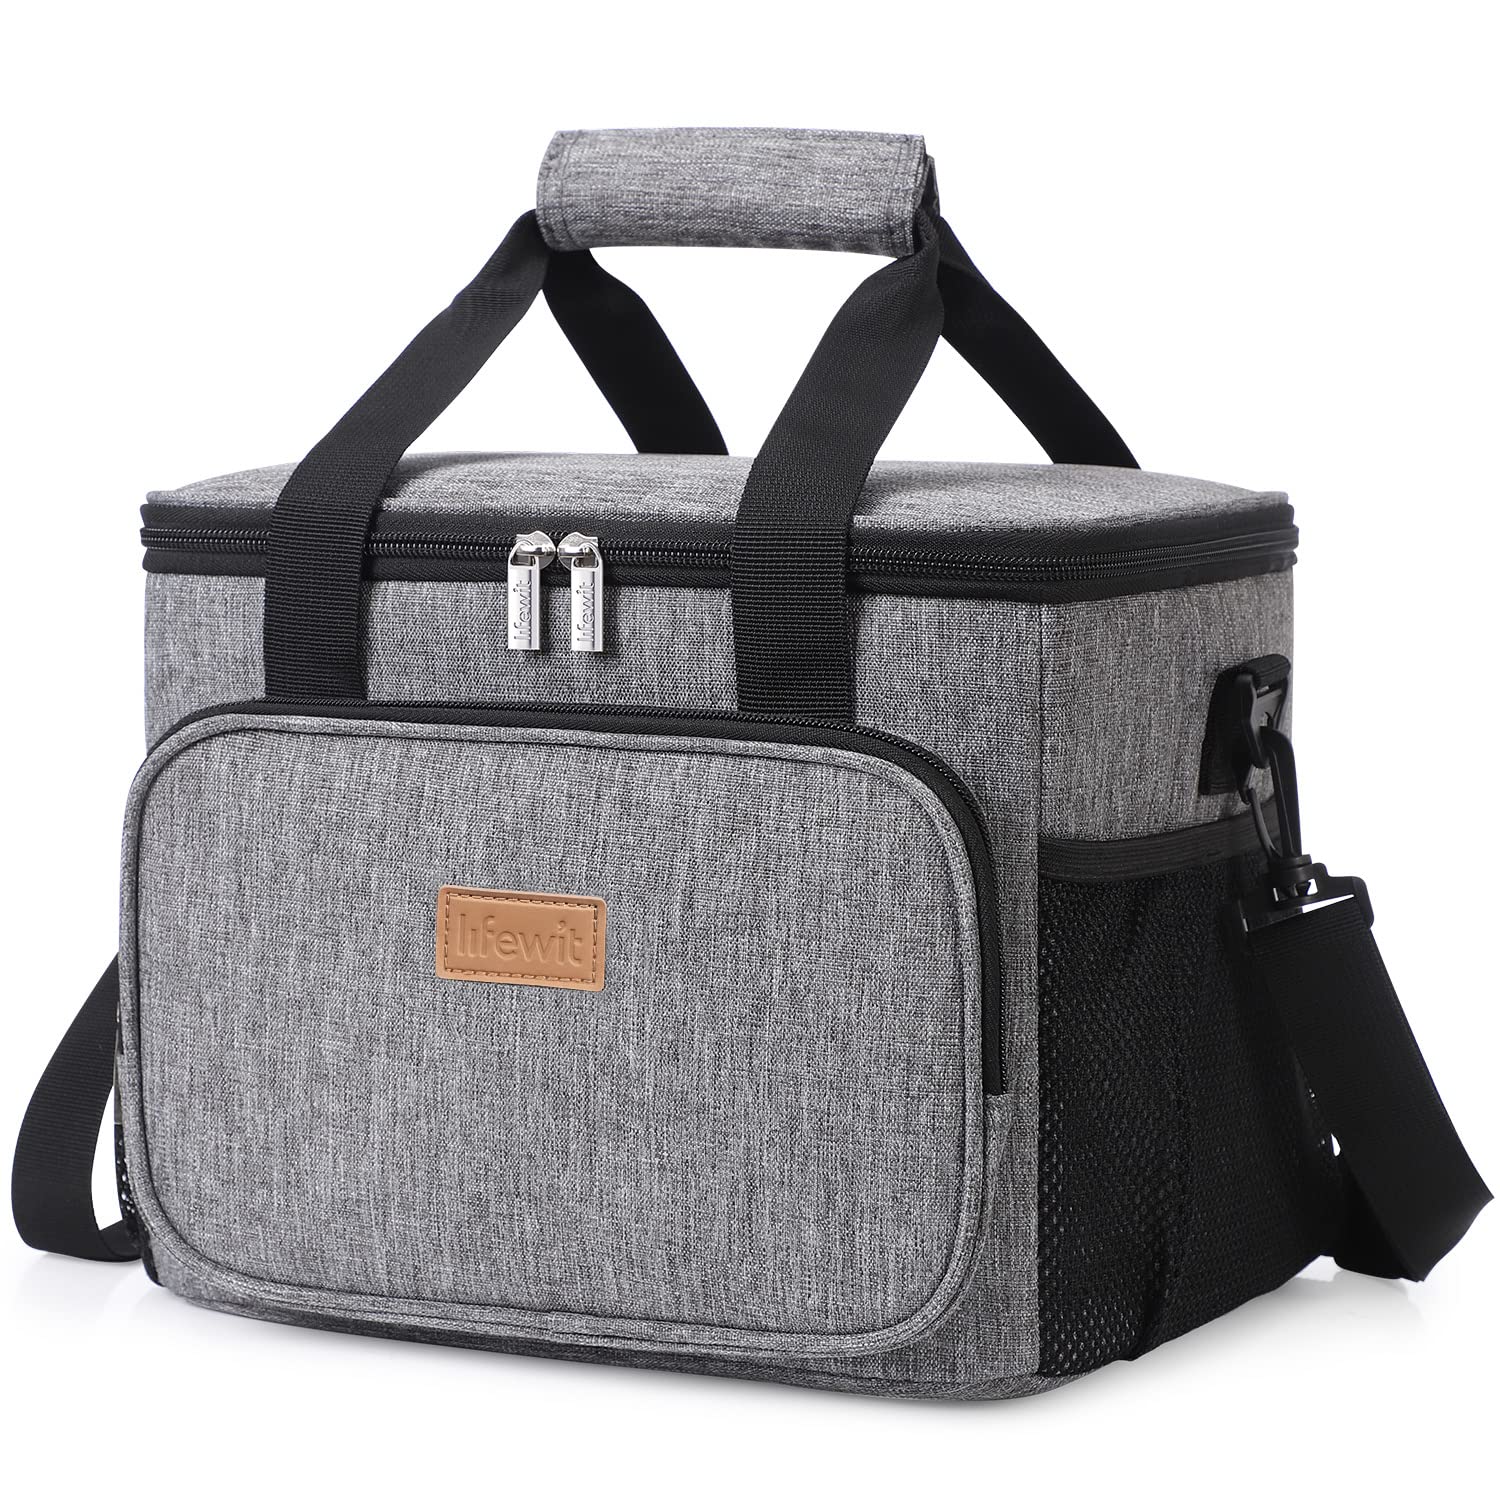 Lifewit Large Lunch Bag Soft Cooler Bag Cooling Tote for Adult Men Women, 15L/24L, Grey